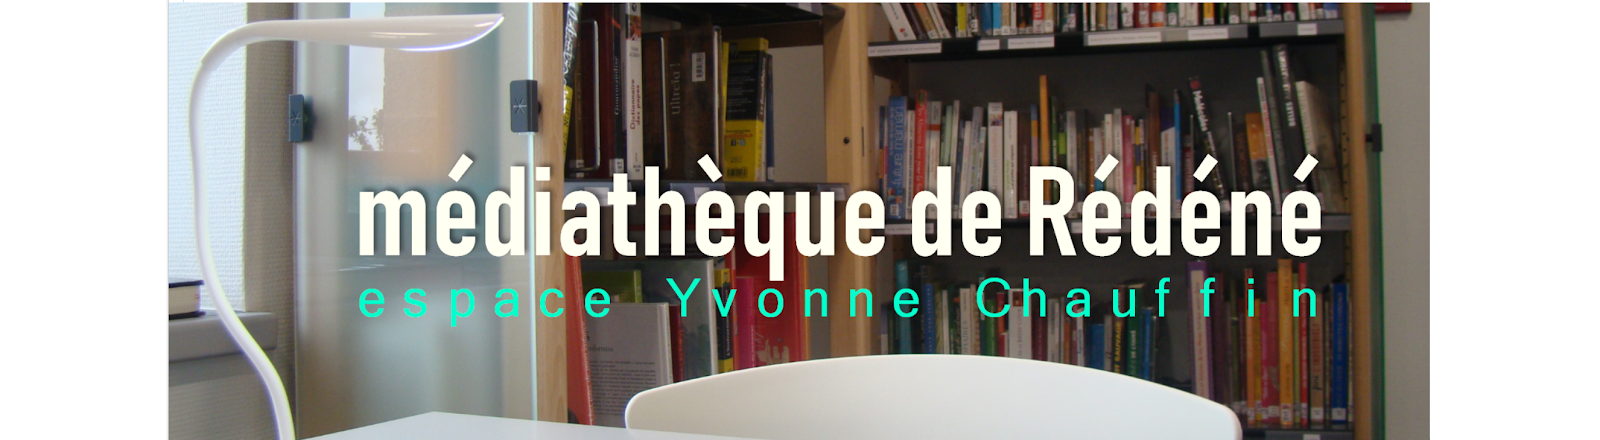 Médiathèque de Rédéné - Espace Yvonne Chauffin